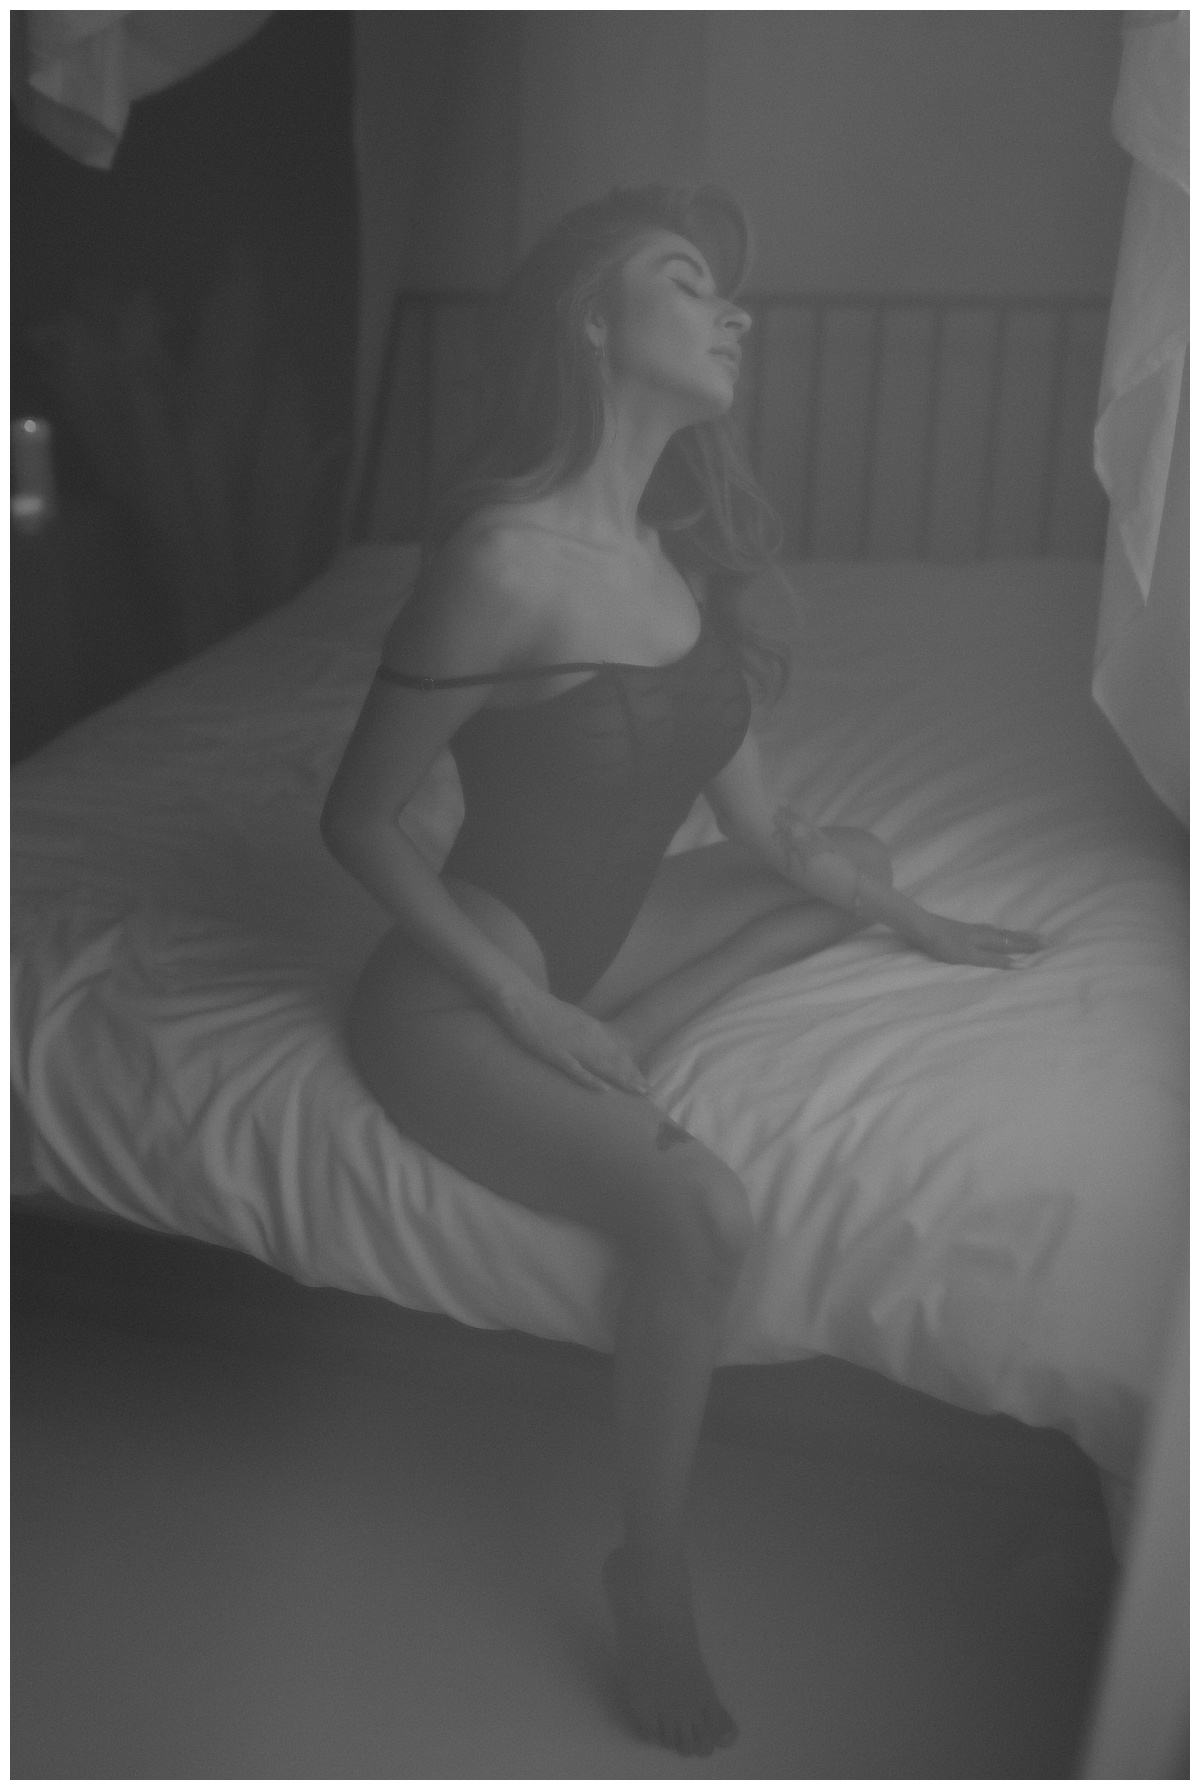 Female leans over bed not in Honey Birdette lingerie